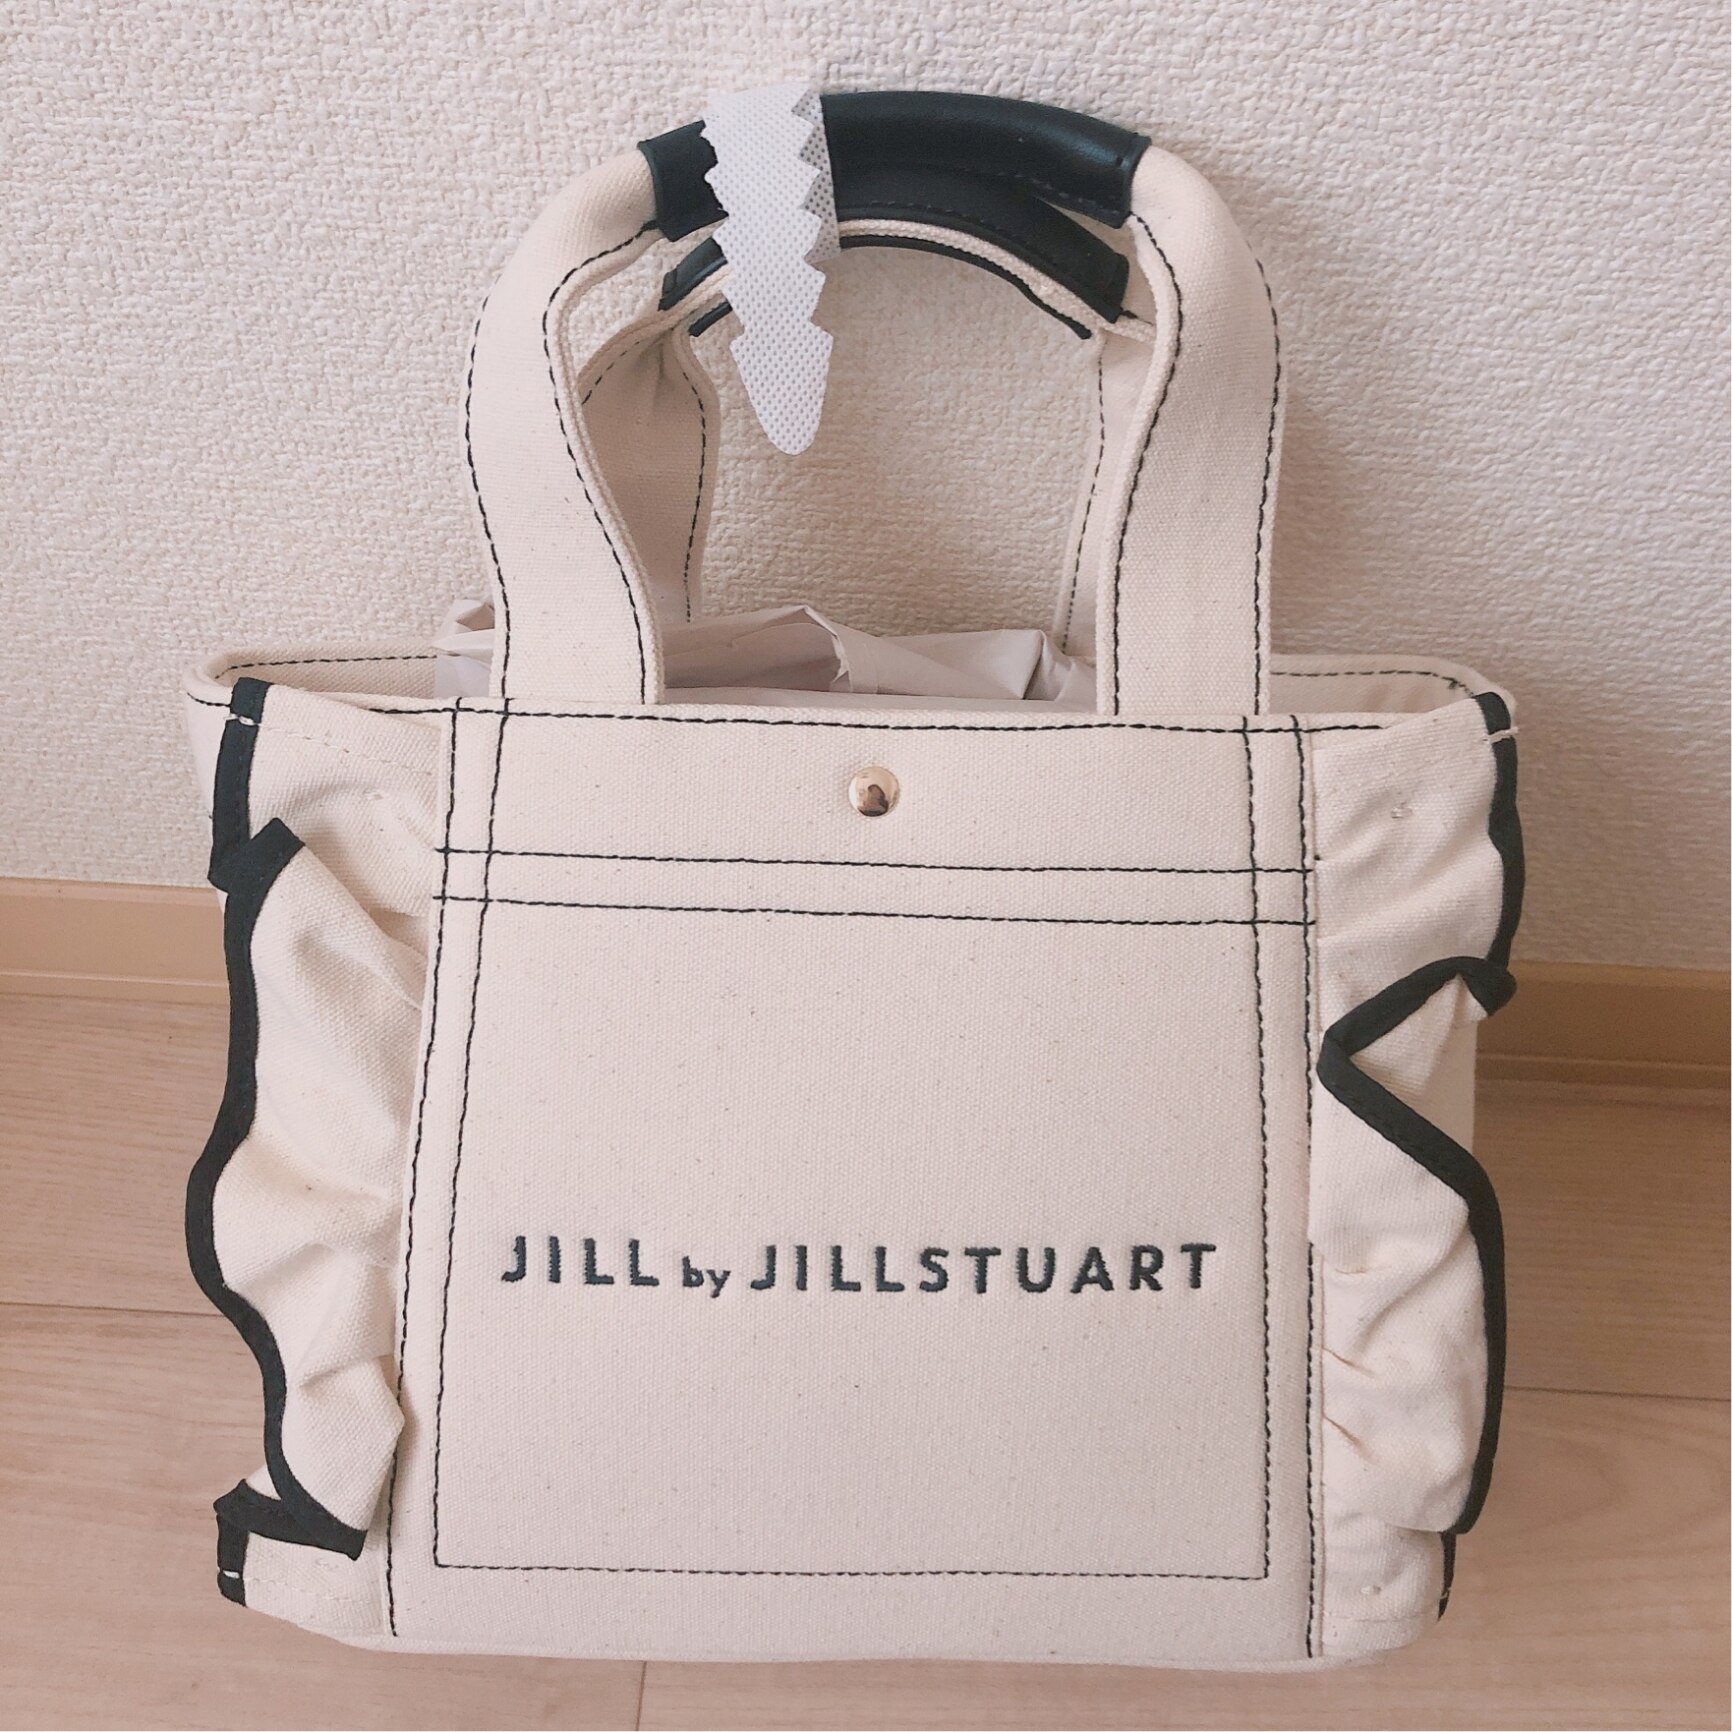 JILL by JILLSTUART フリルトートバッグ(小) ジル バイ ジル 